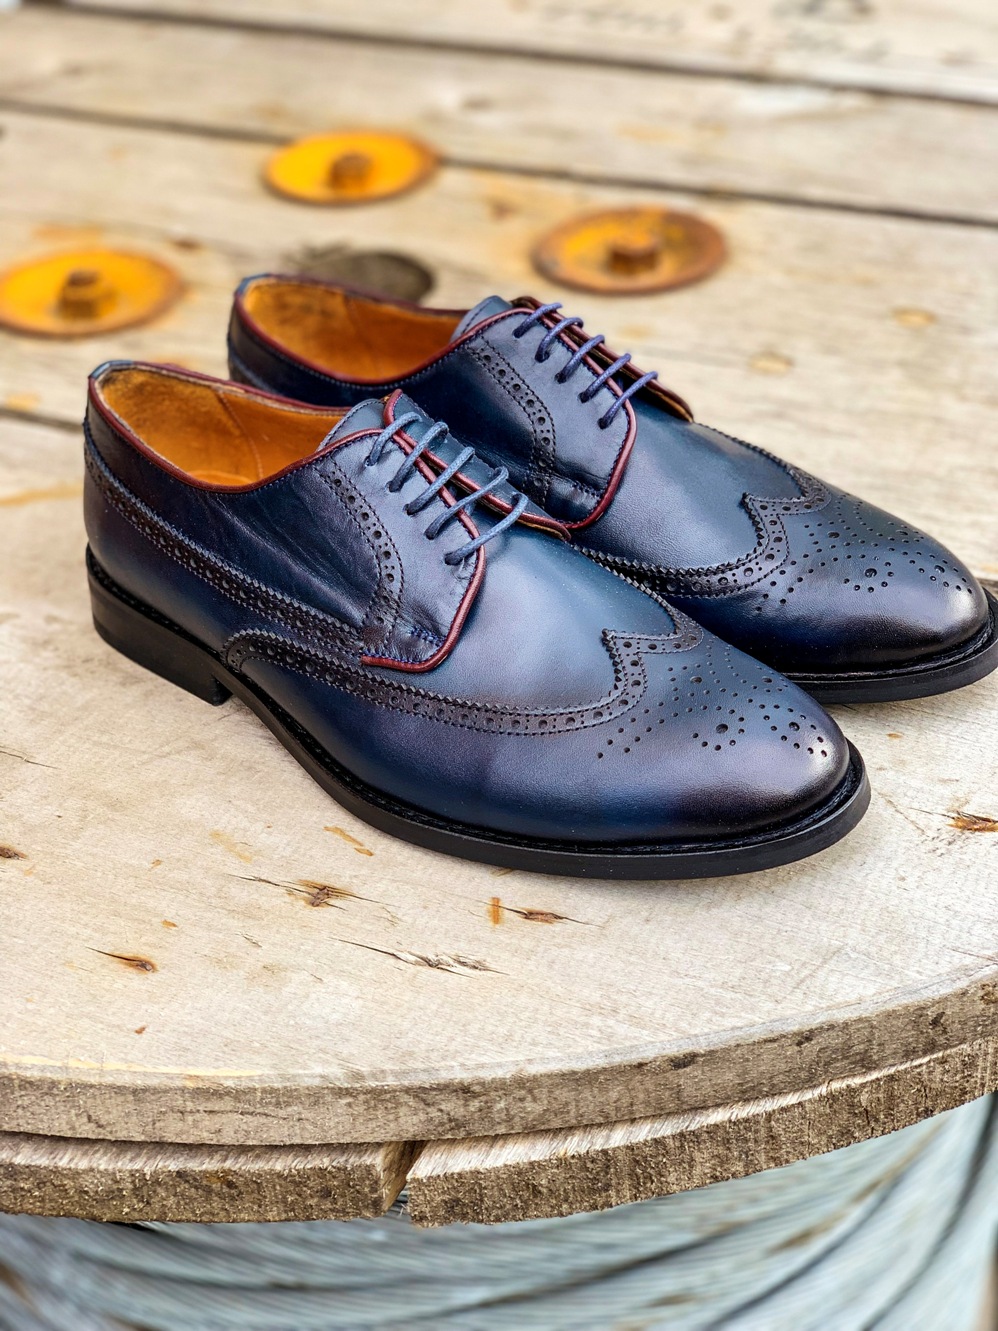 Модная мужская обувь синего-цвета. Арт.: 14-1105